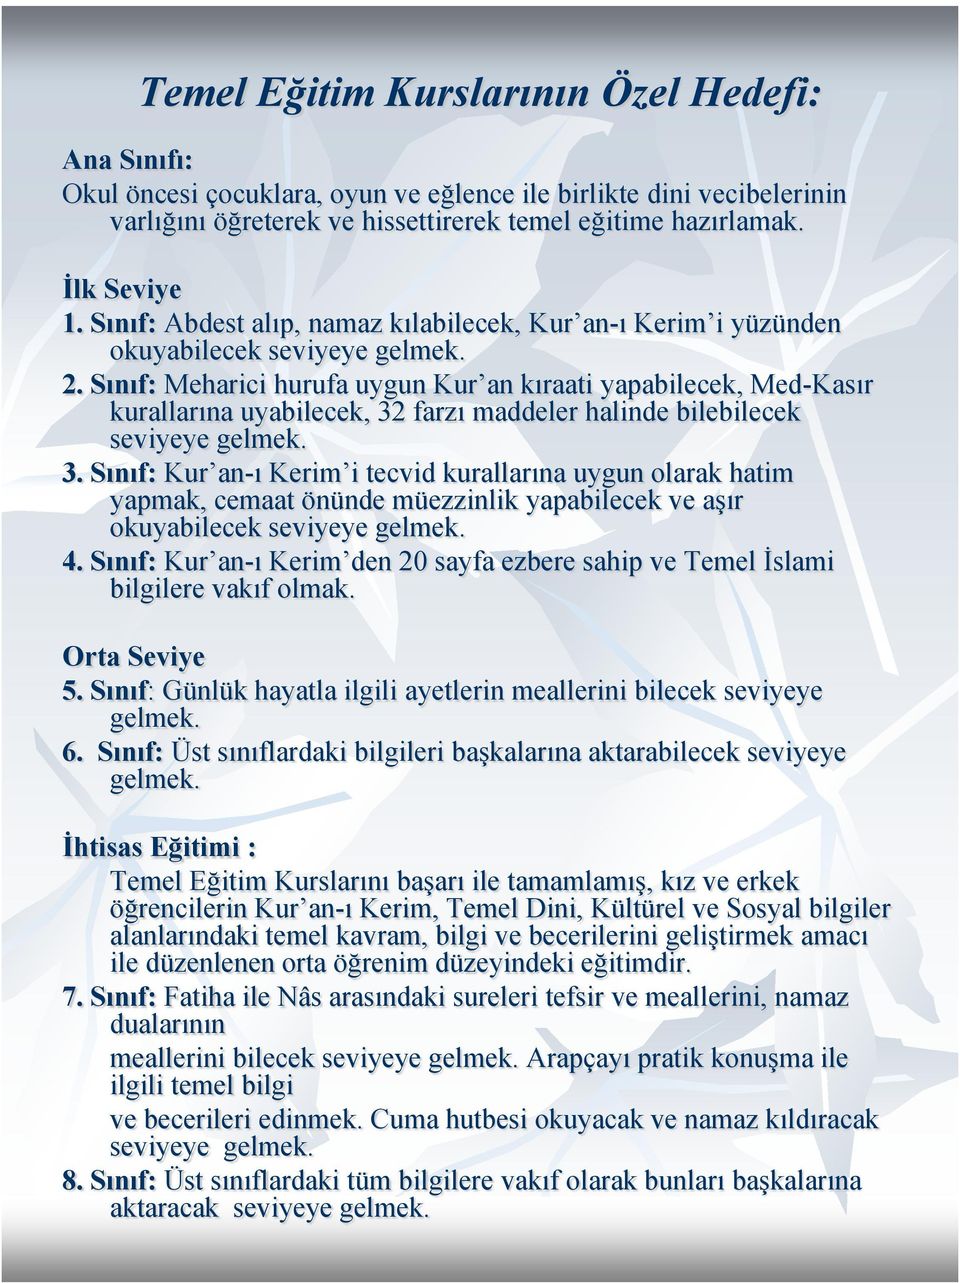 Sınıf: Meharici hurufa uygun Kur an kıraati yapabilecek, Med-Kasır kurallarına uyabilecek, 32